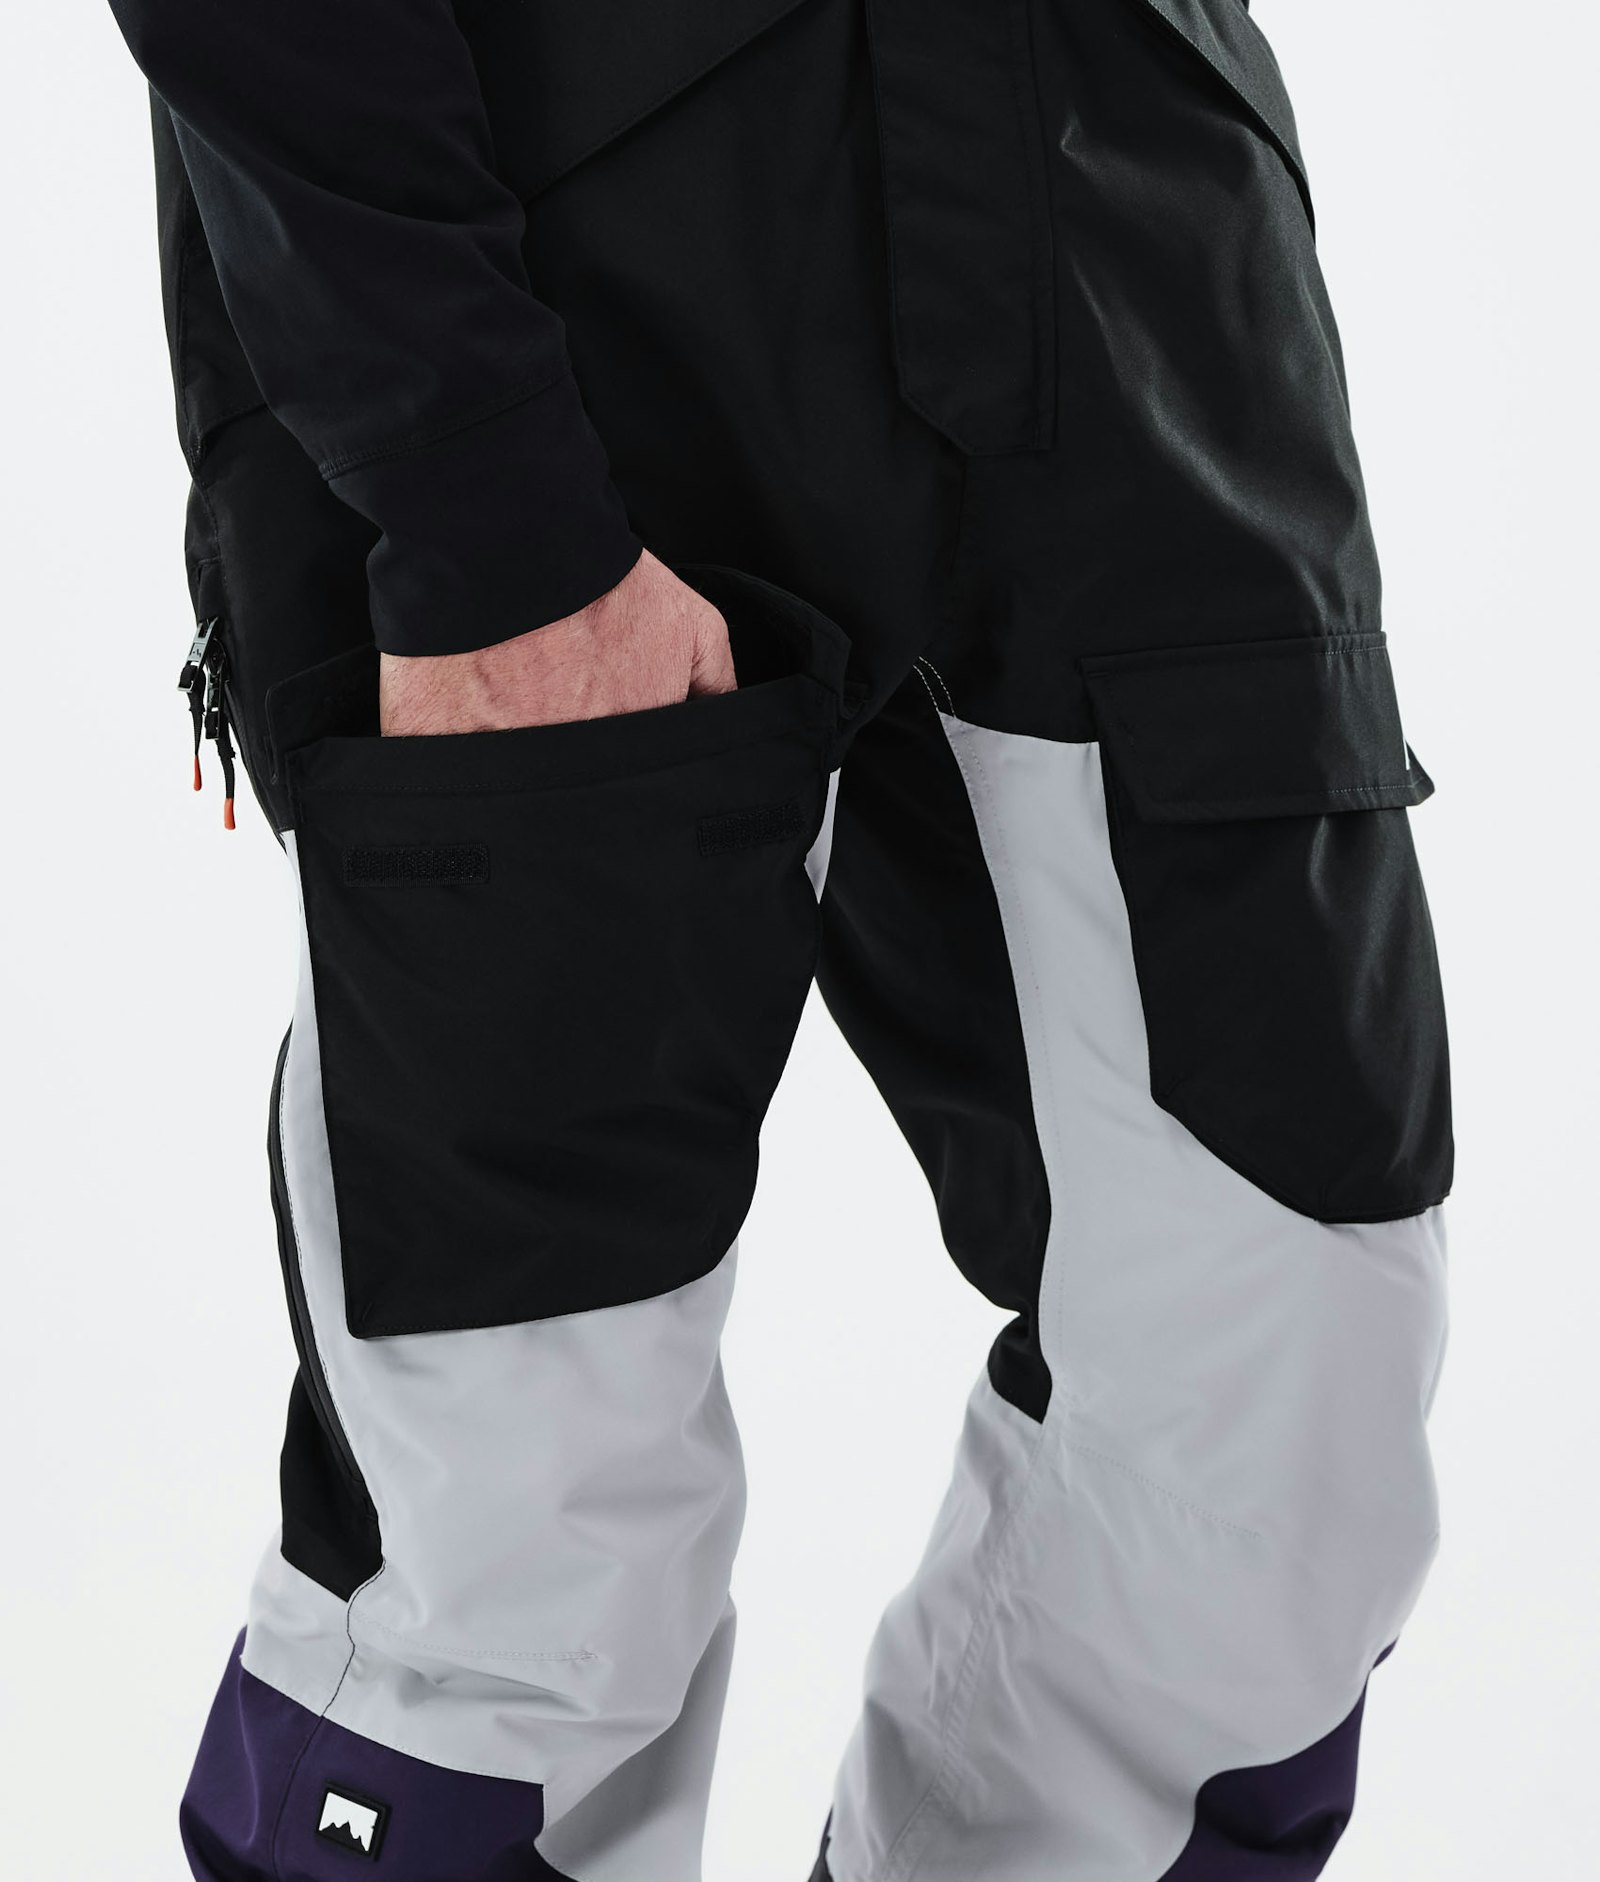 Montec Fawk 2021 Pantalones Esquí Hombre Black/Light Grey/Purple